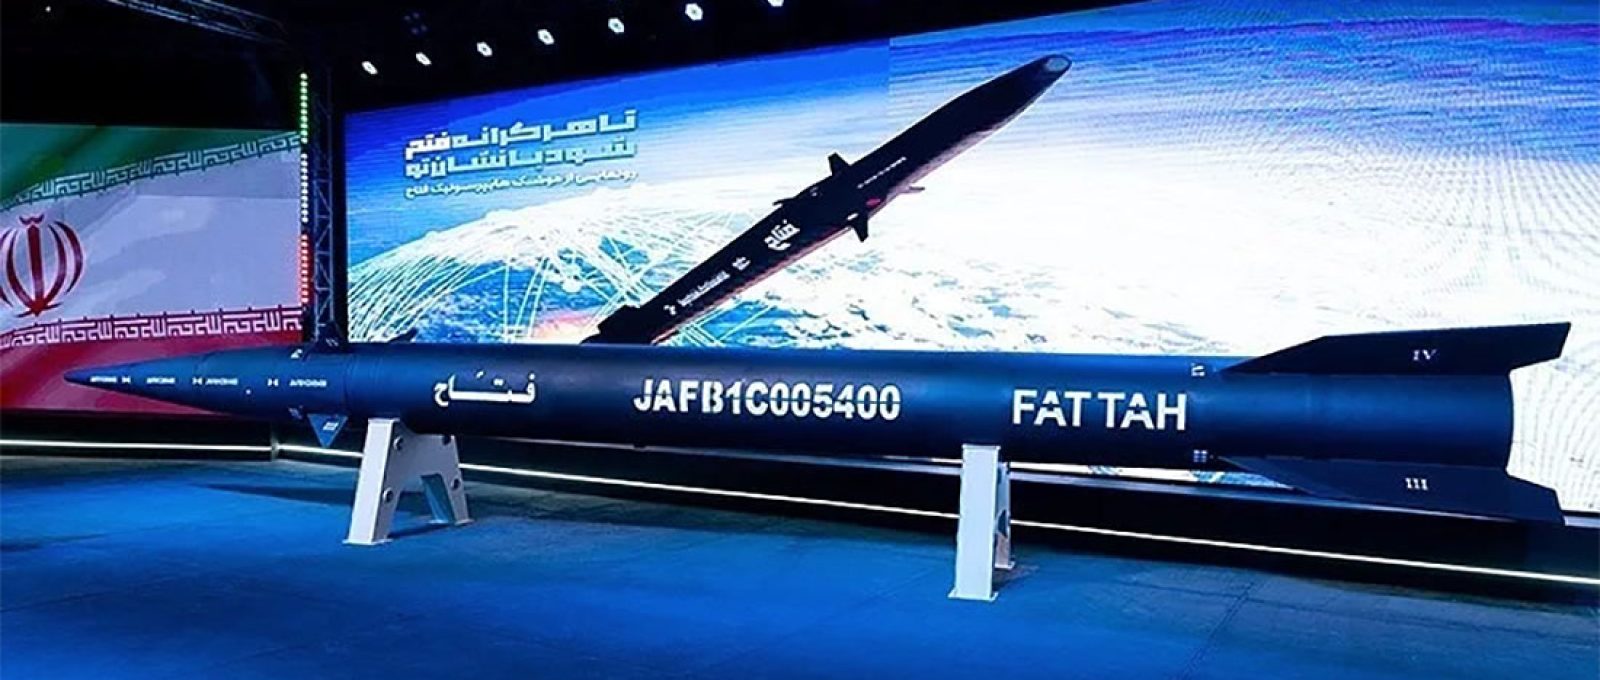 Apresentação do míssil hipersônico iraniano Fattah (Hossein Zohrevand/Tasnim News Agency).